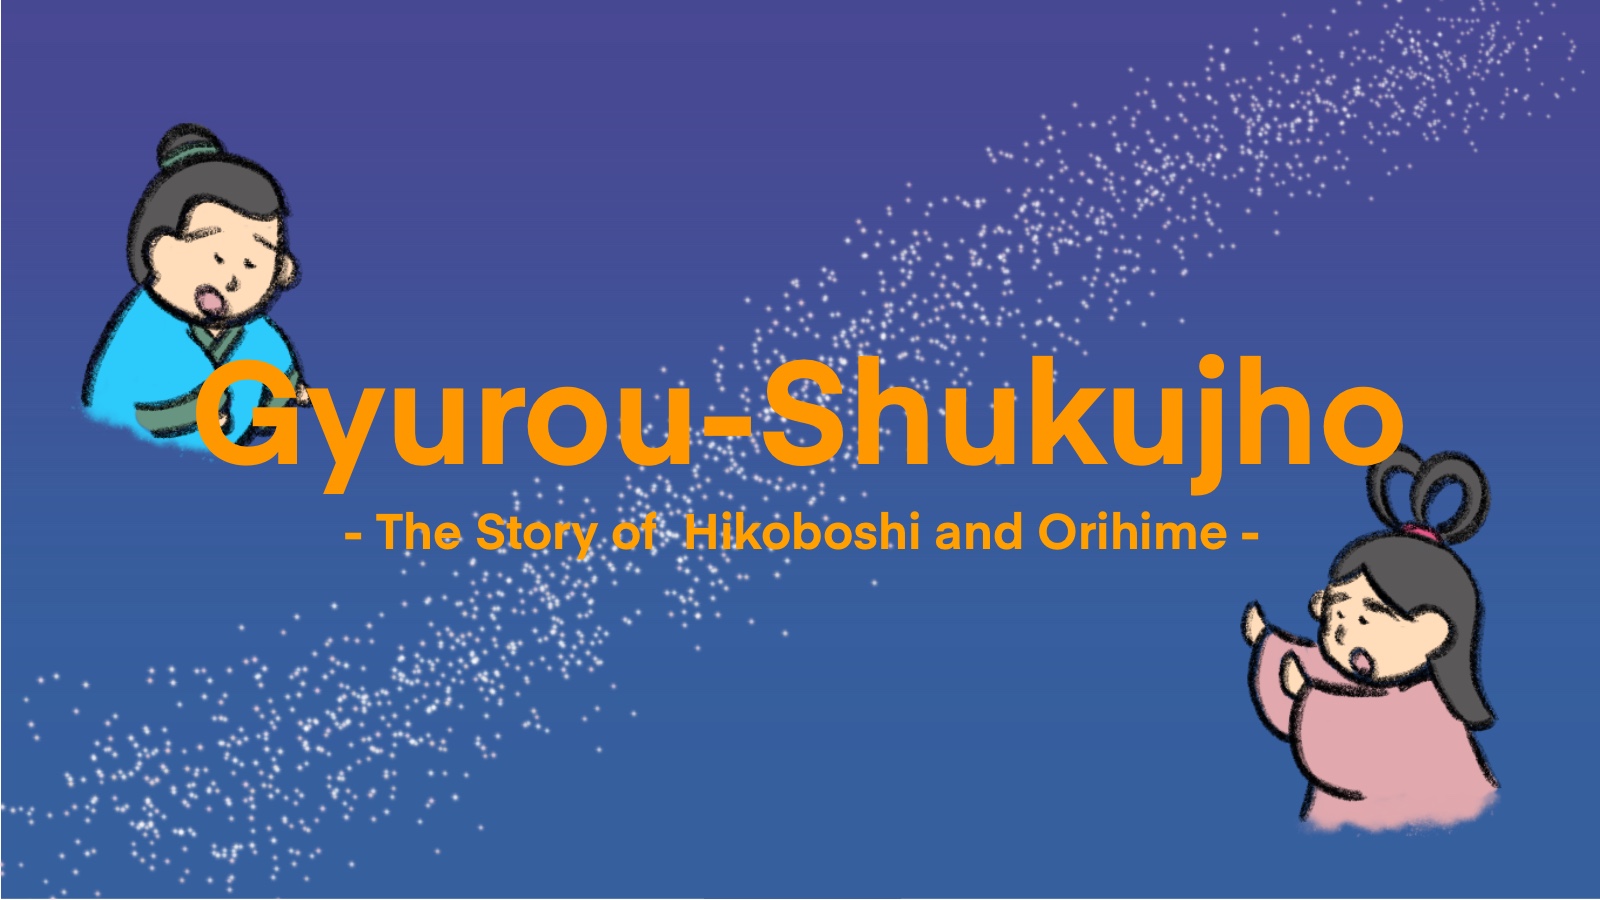 The Story of Hikoboshi and Orihime